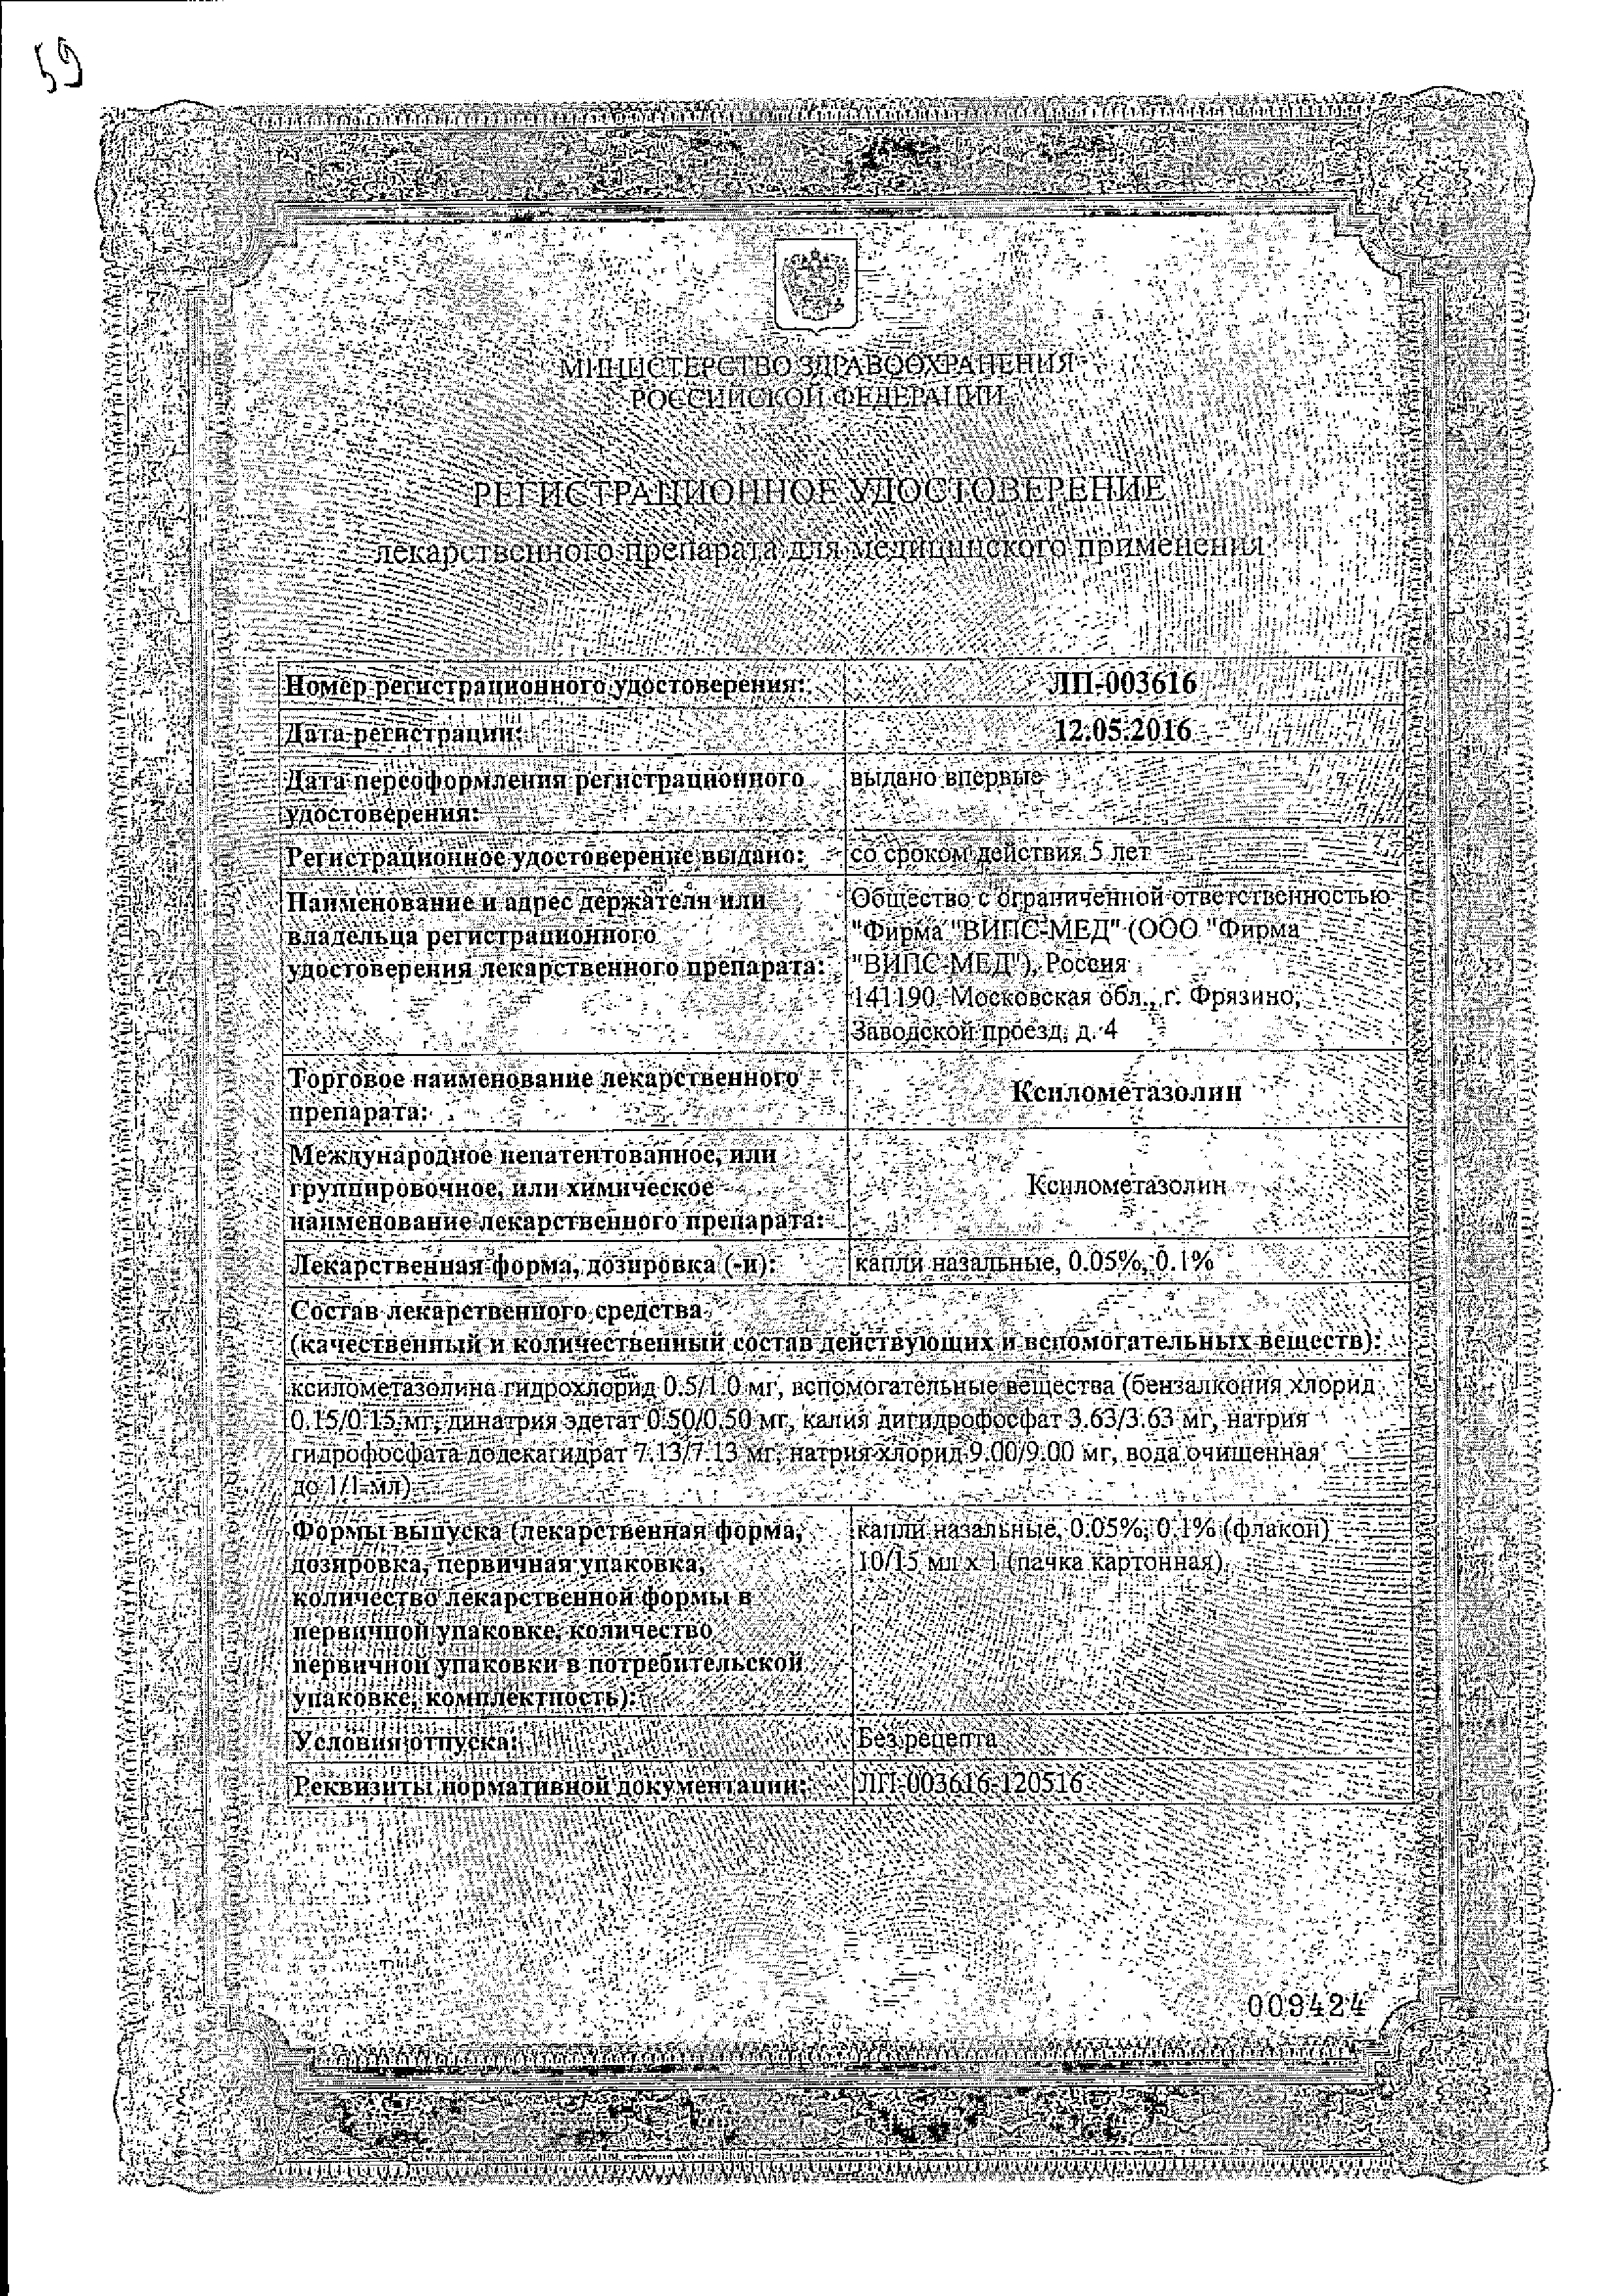 Ксилометазолин сертификат